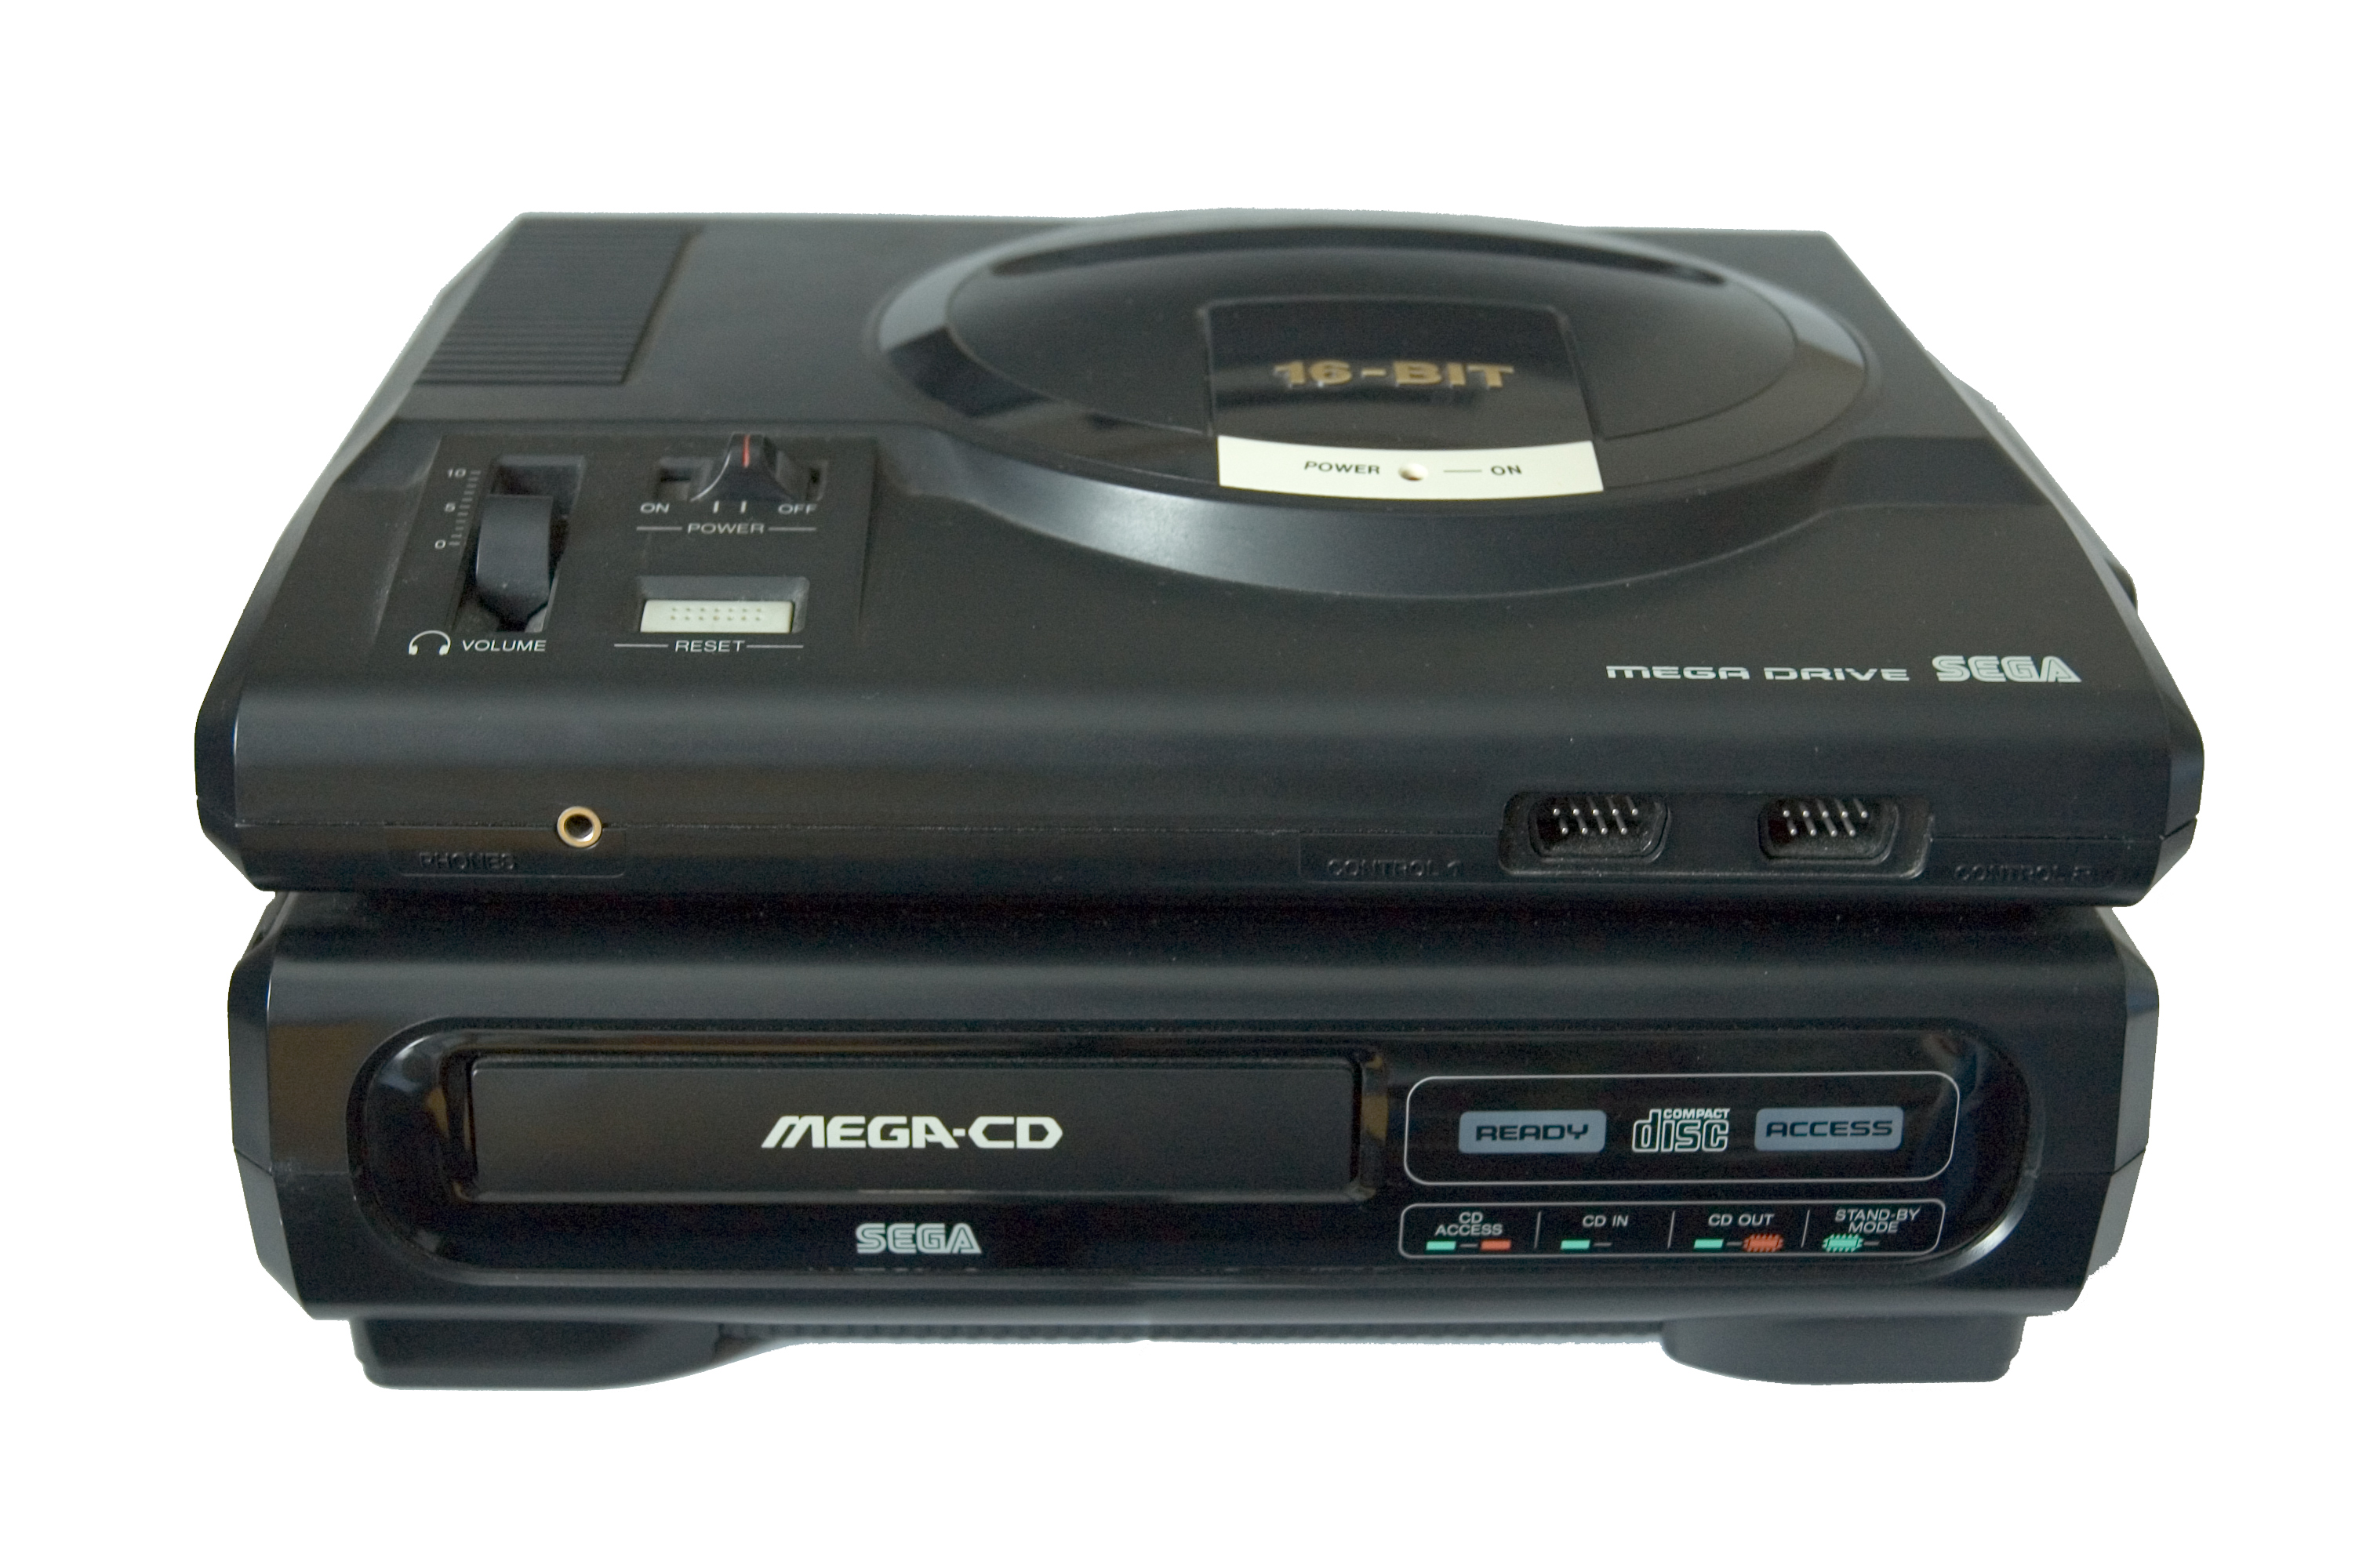 Sega Mega-CD (1991)